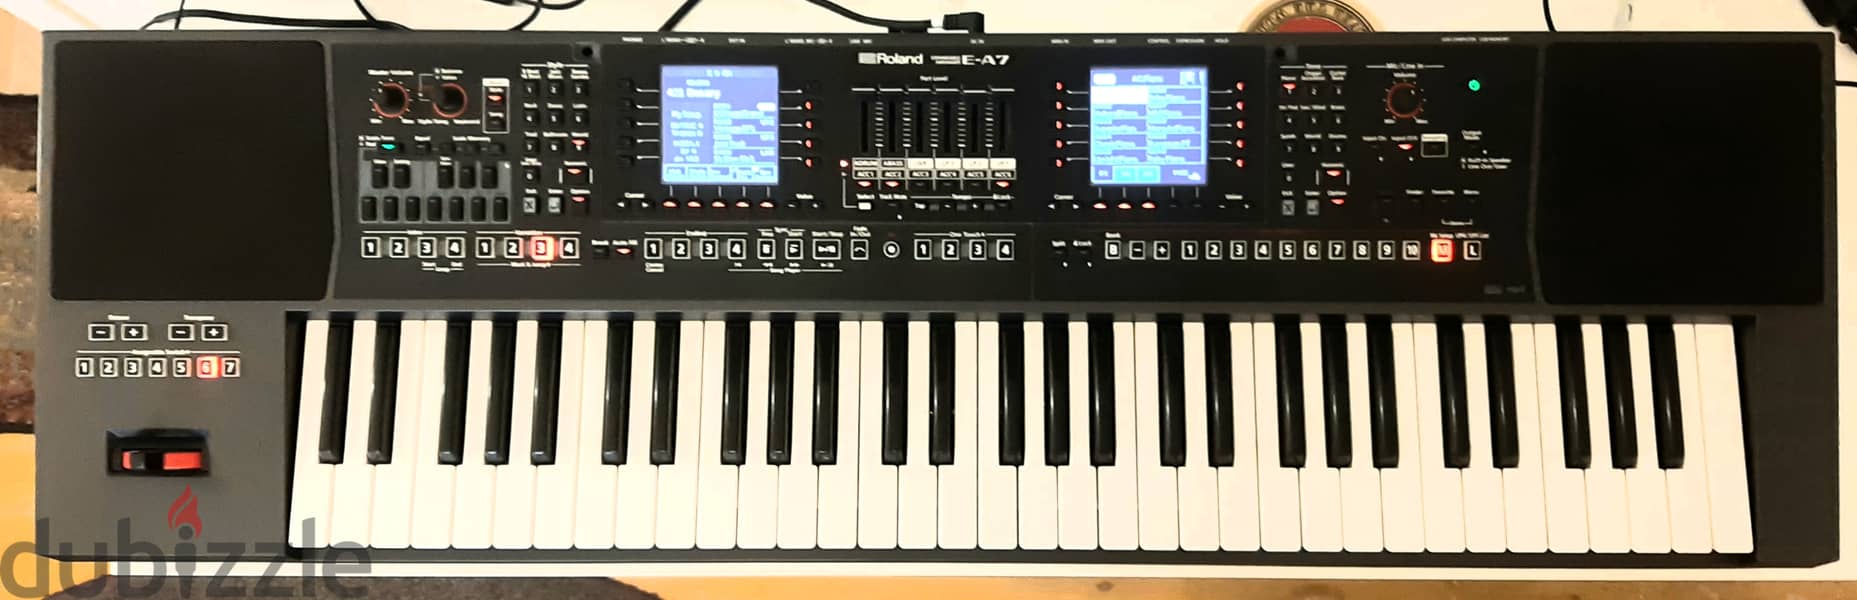 Roland E-A7 expandable arranger 1